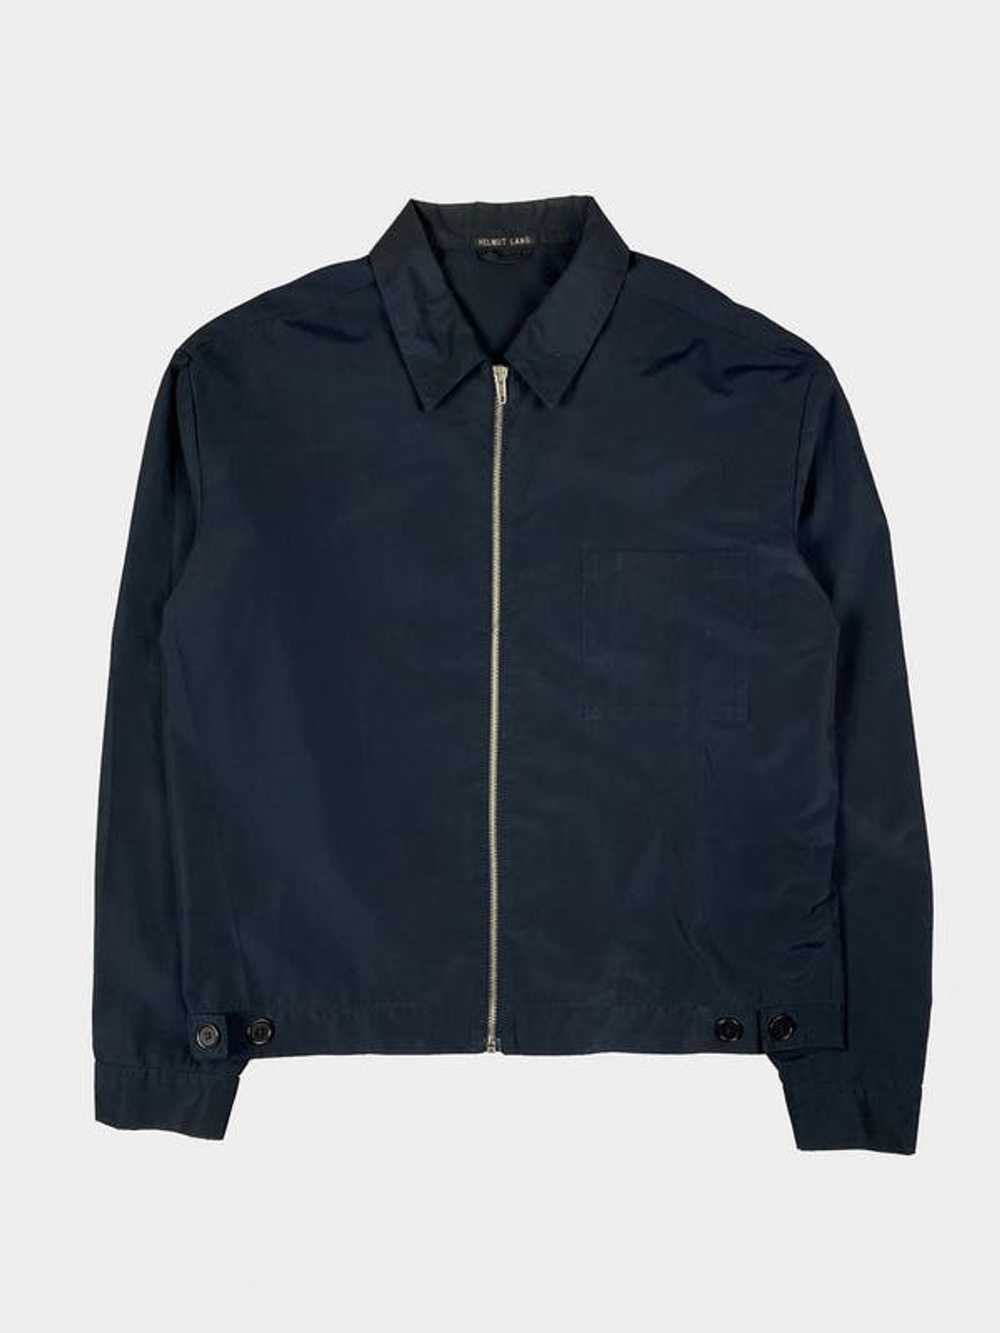 Helmut Lang Blue Pocket Cotton Jacket - image 1